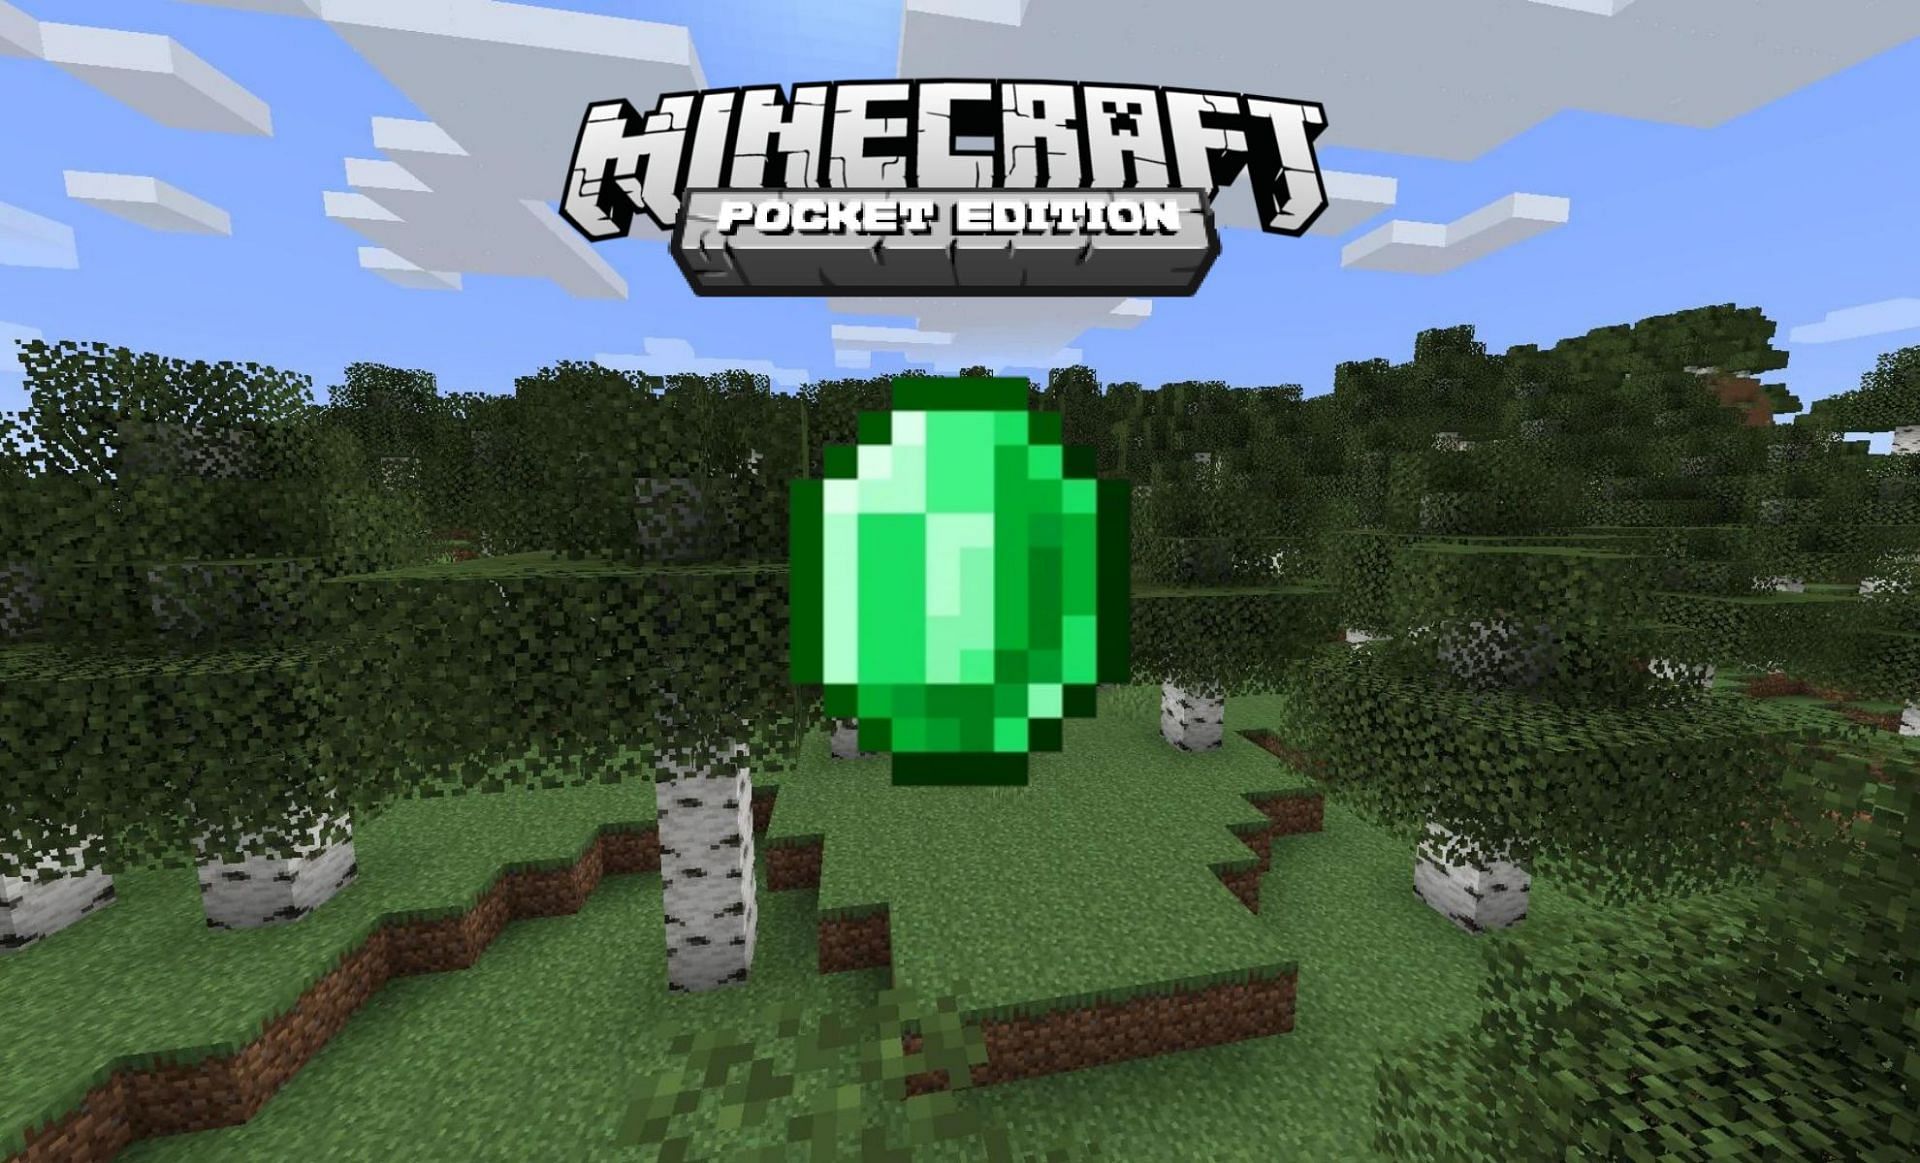 Emeralds (Images via Minecraft Wiki)